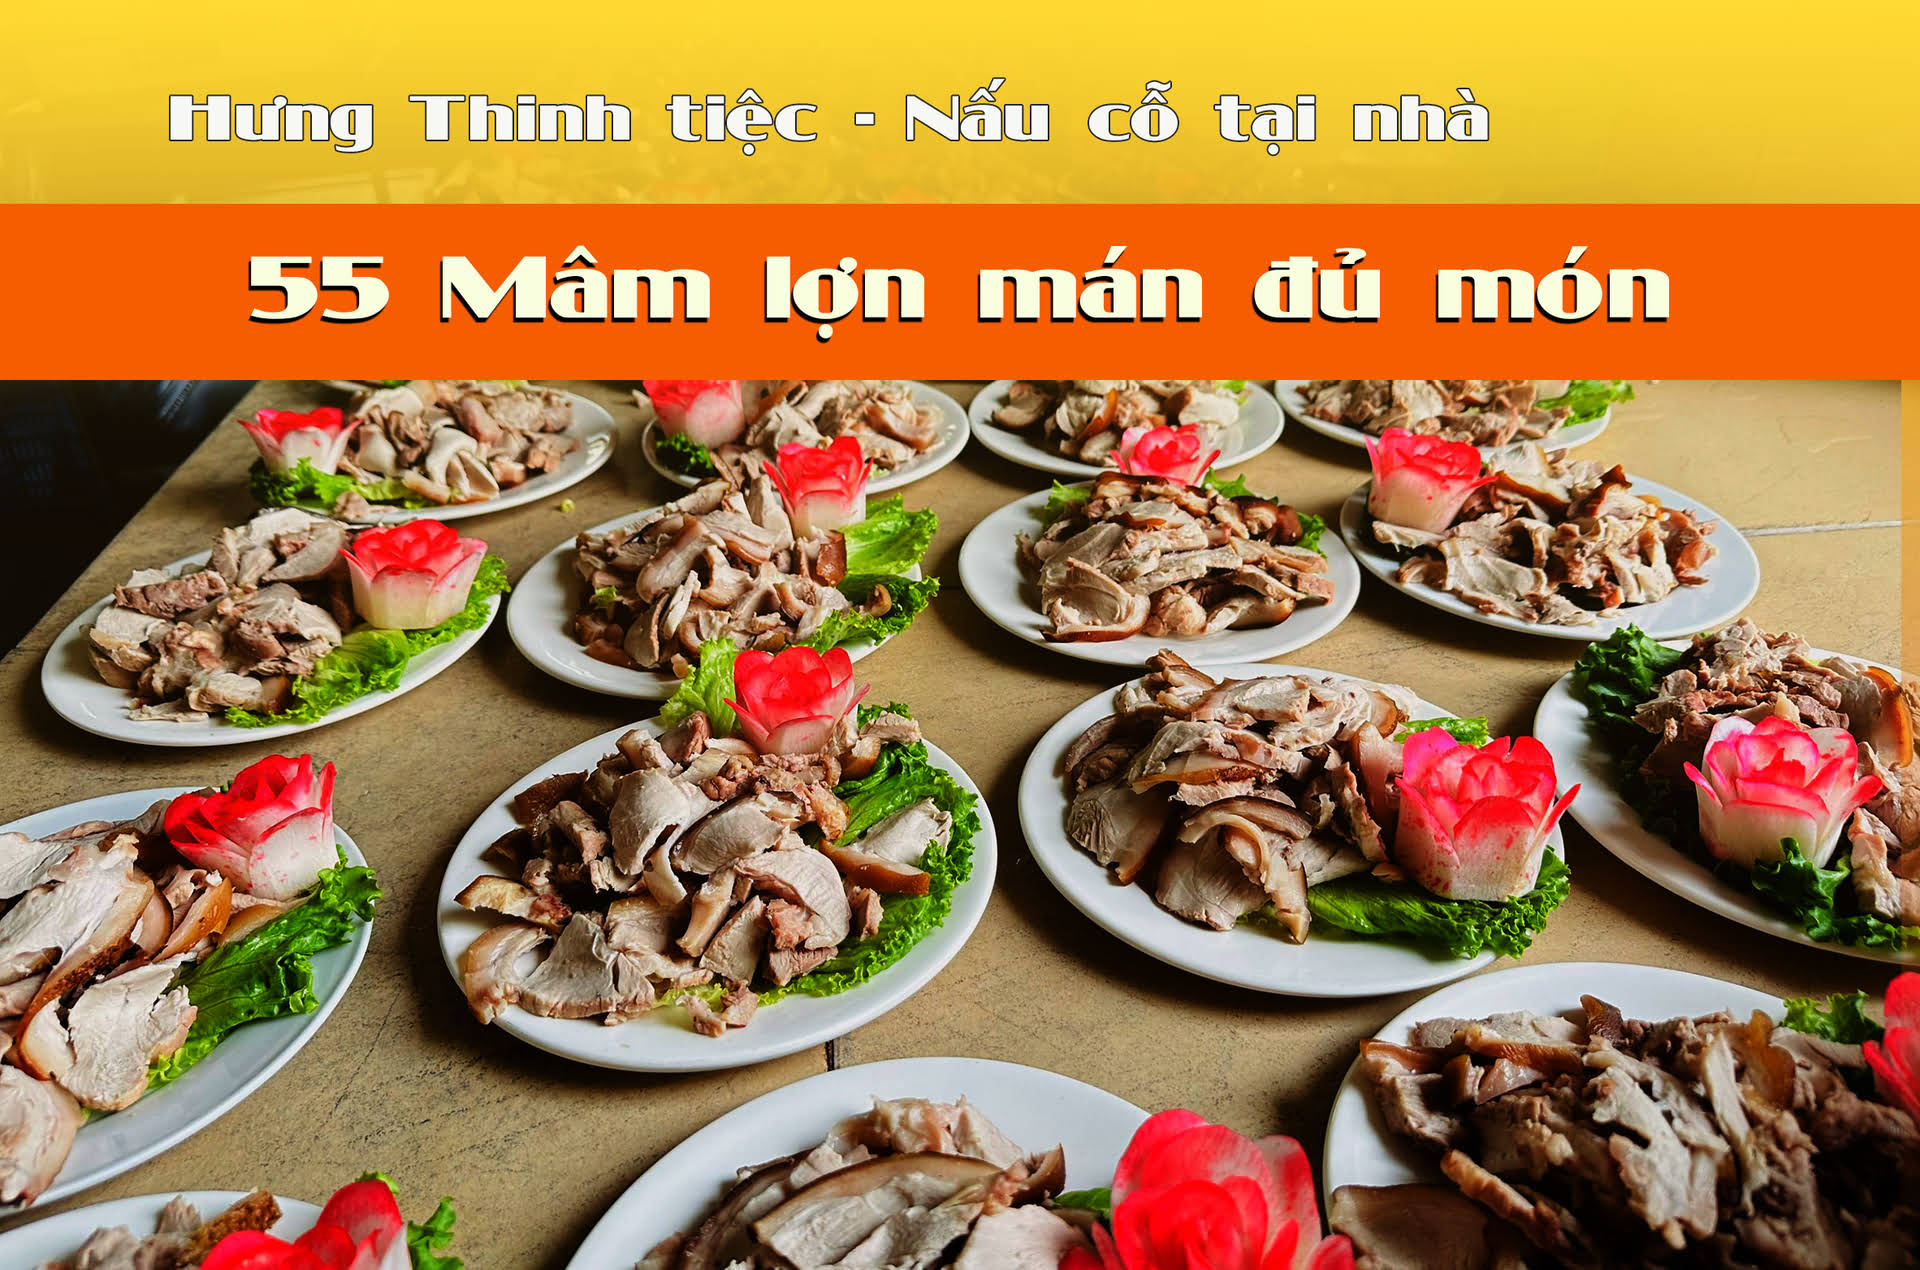 Phục vụ 55 mâm tiệc chuyên món Lợn Mán tại Kiều Mai Bắc Từ Liêm - Tiệc Hưng Thịnh mang đến trải nghiệm ẩm thực độc đáo!